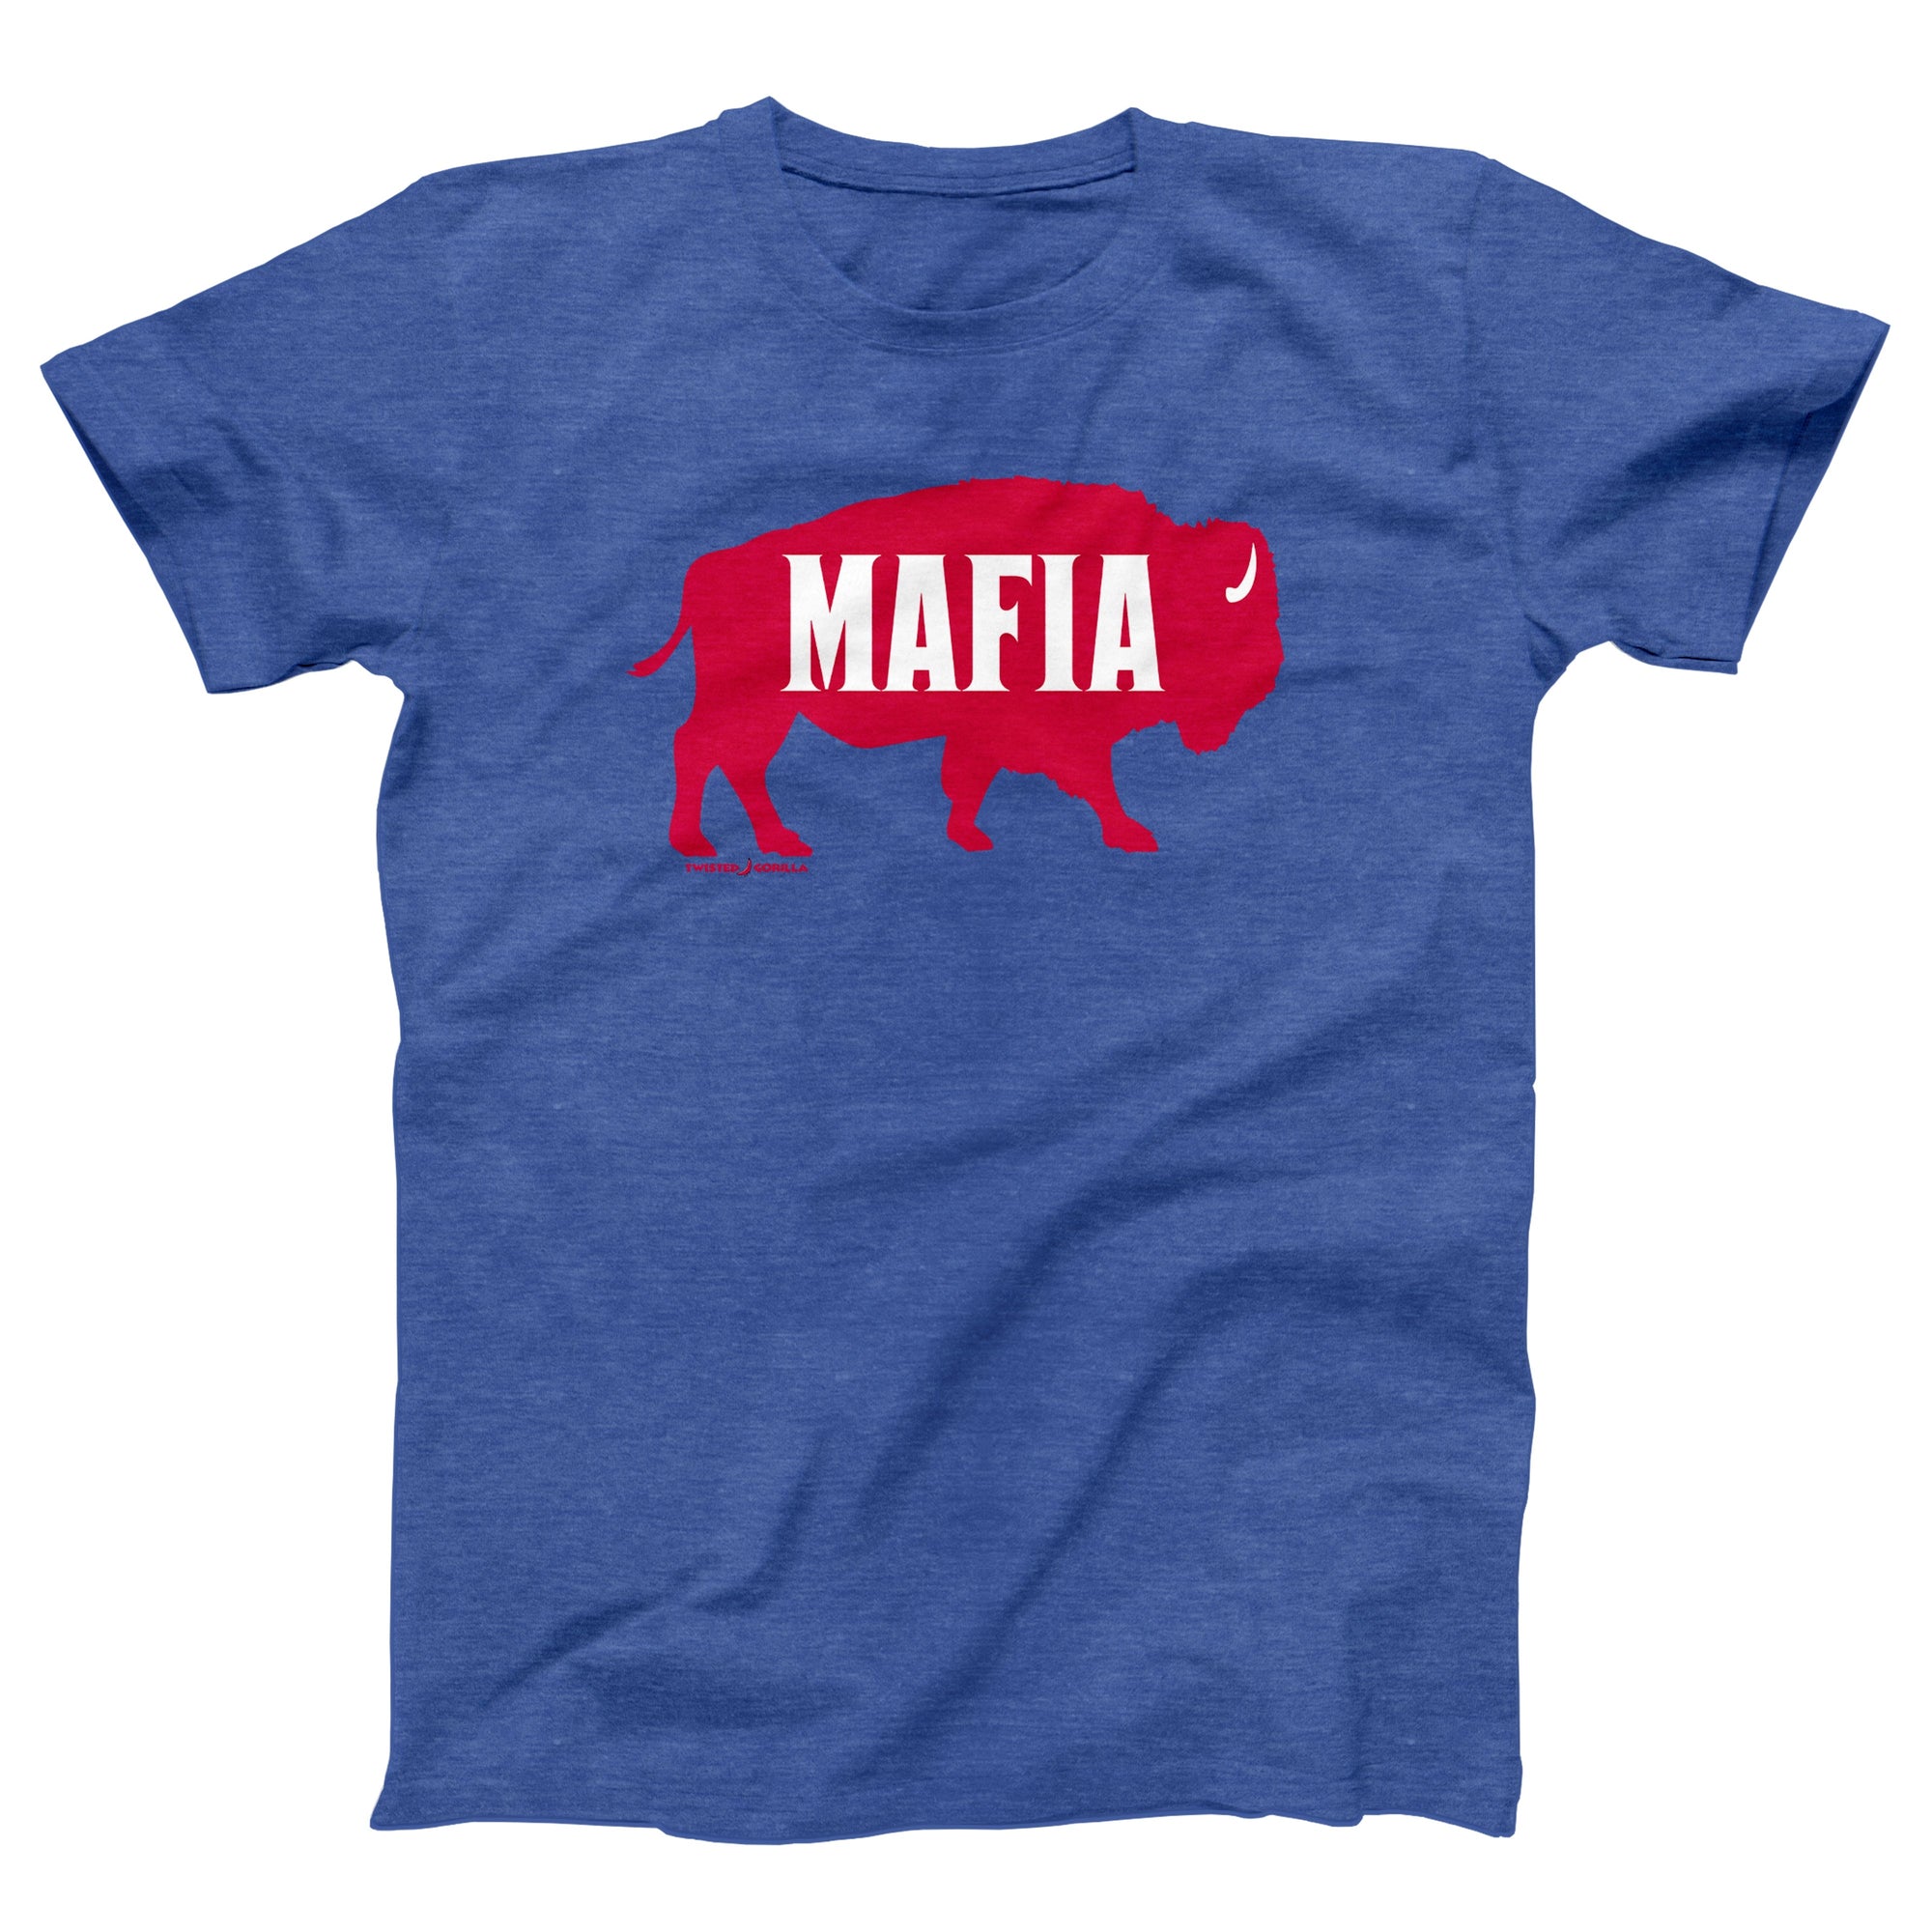 Bills Mafia Adult Unisex T-Shirt